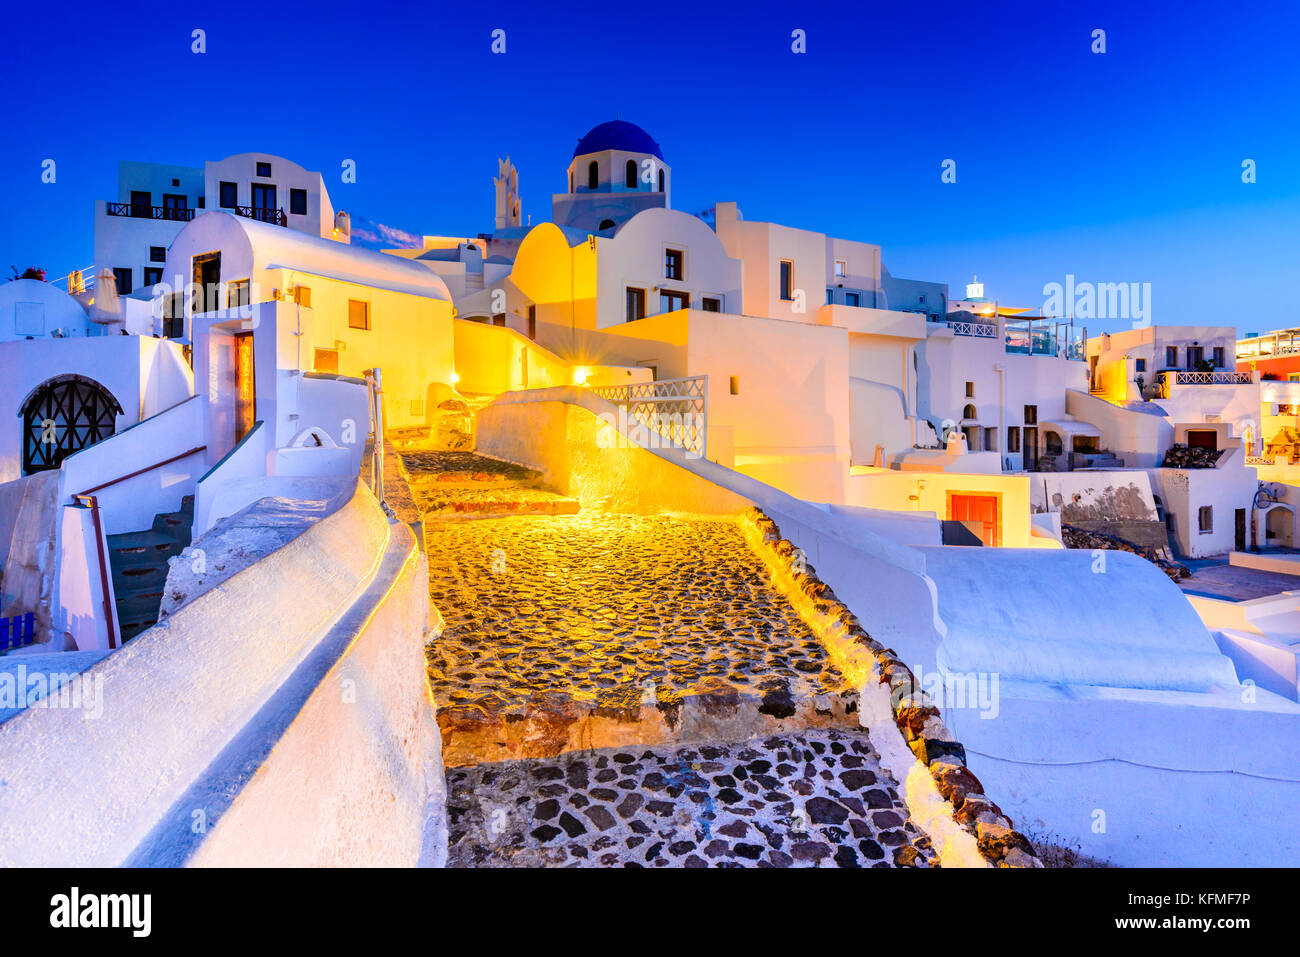 Santorin, Grèce. Oia, village blanc avec des chemins étroits, pavées célèbre attraction des îles Cyclades, Grèce mer Egéé. Banque D'Images